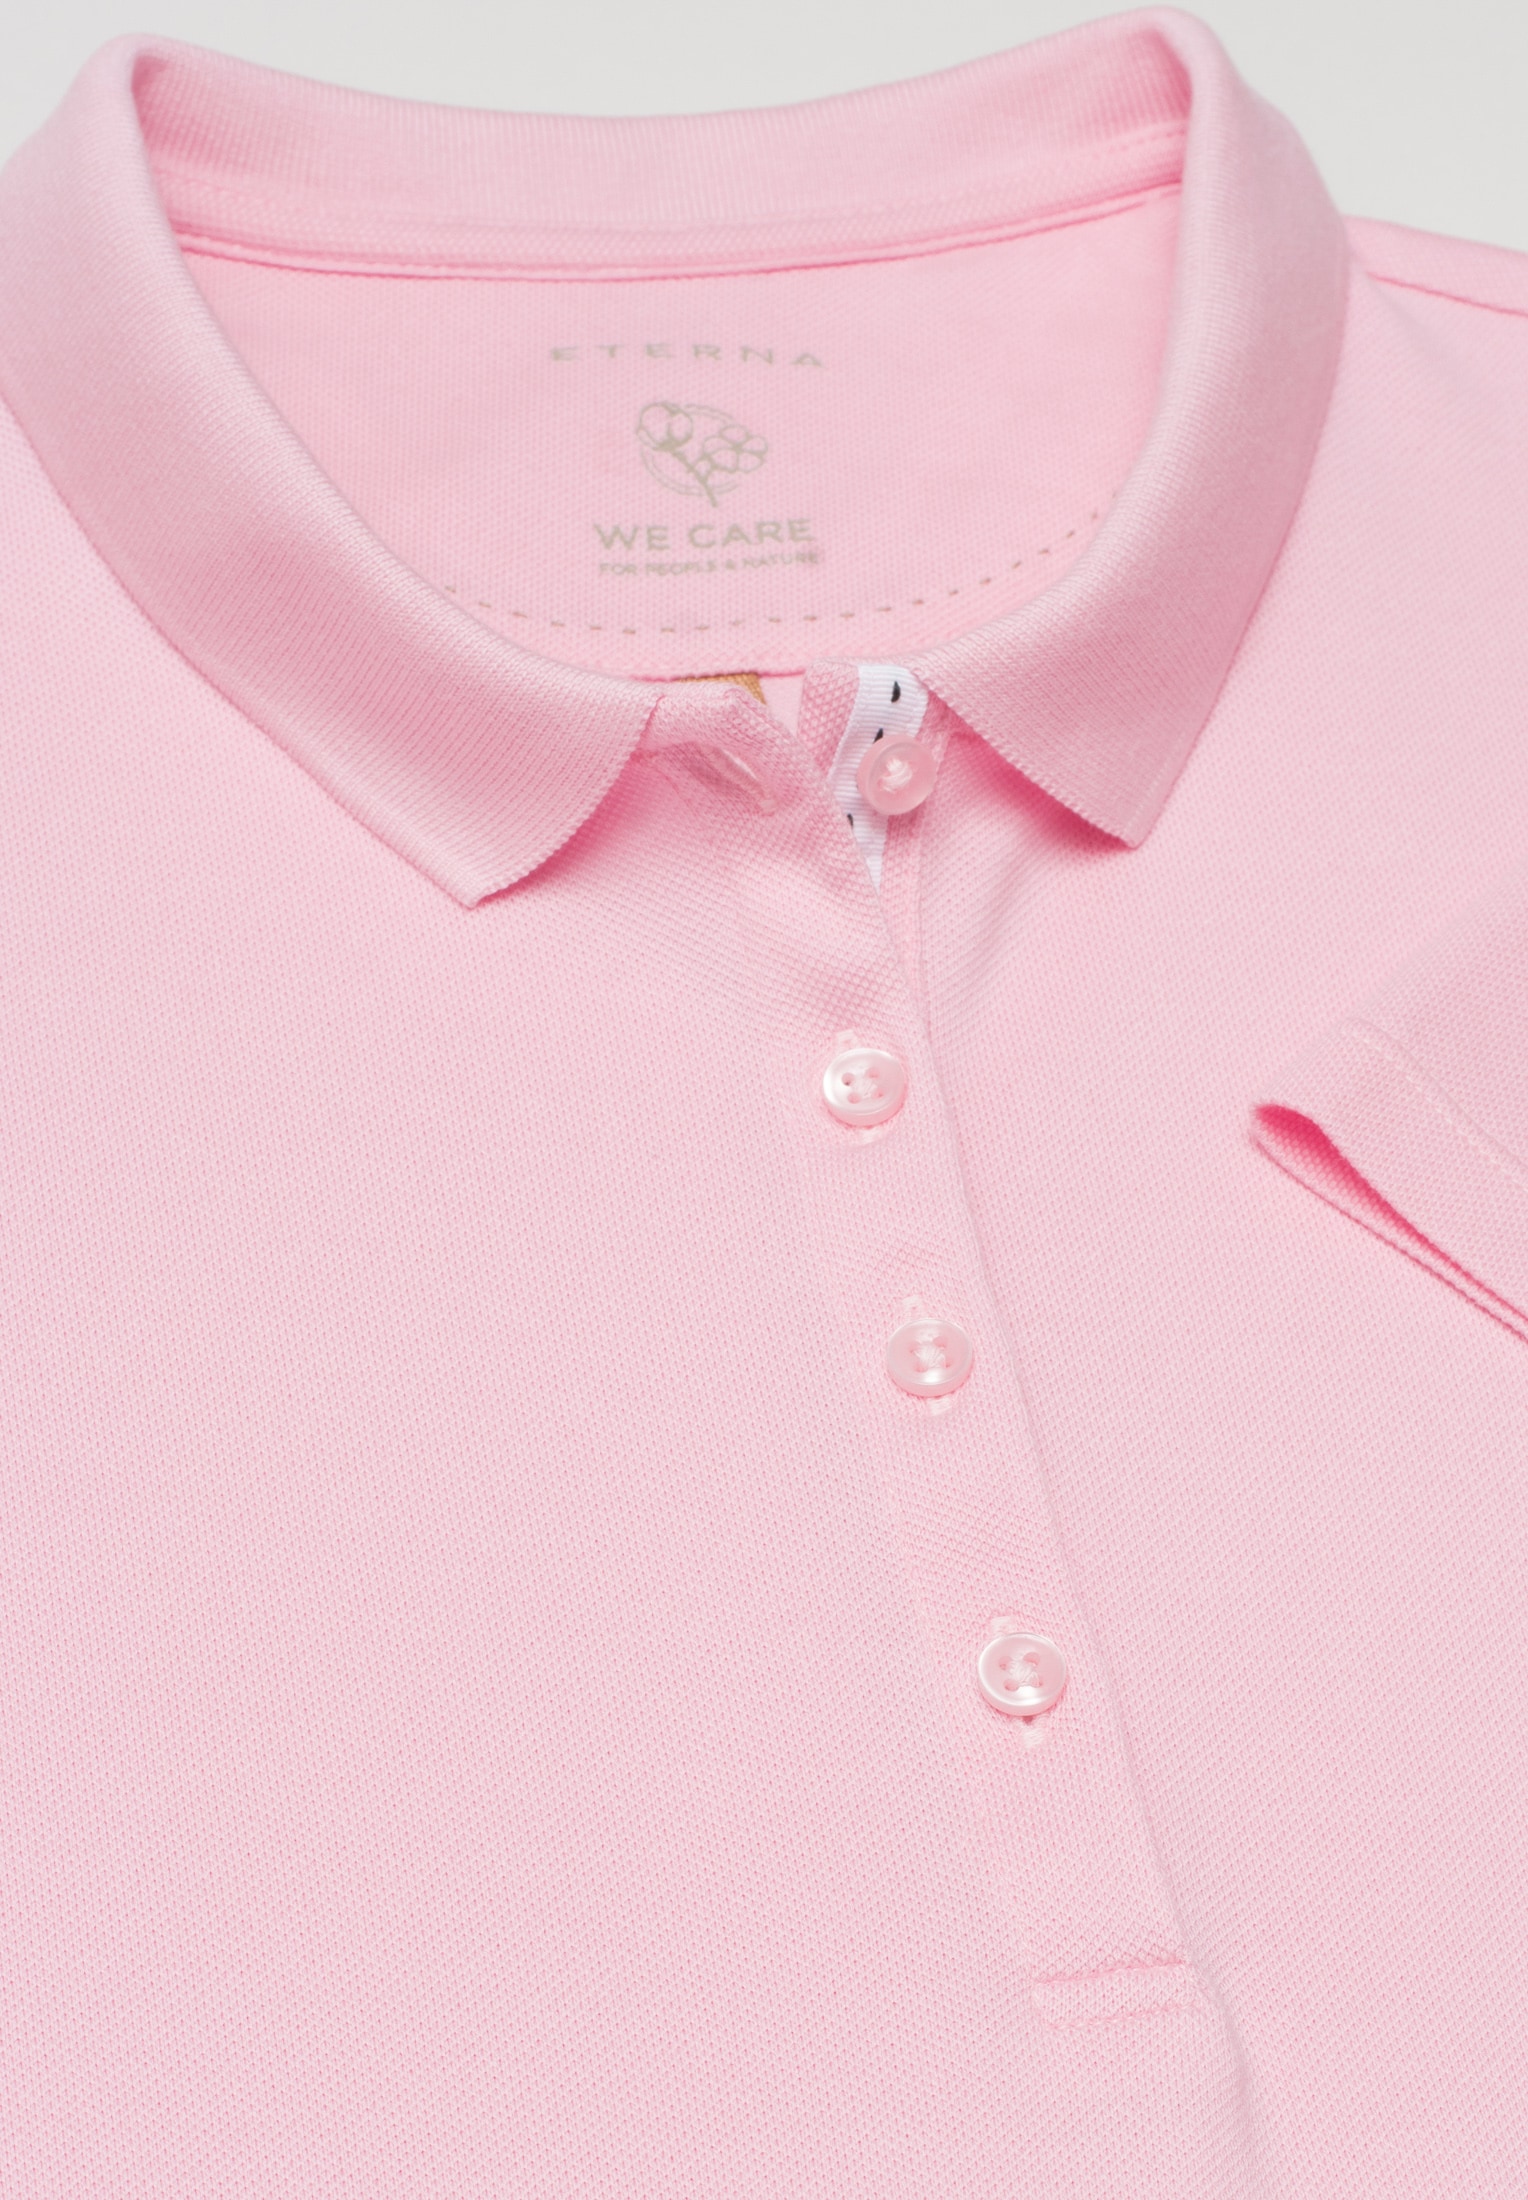 Poloshirt in soft pink | | L unifarben pink | 2SP00006-15-12-L-1/2 soft Kurzarm 